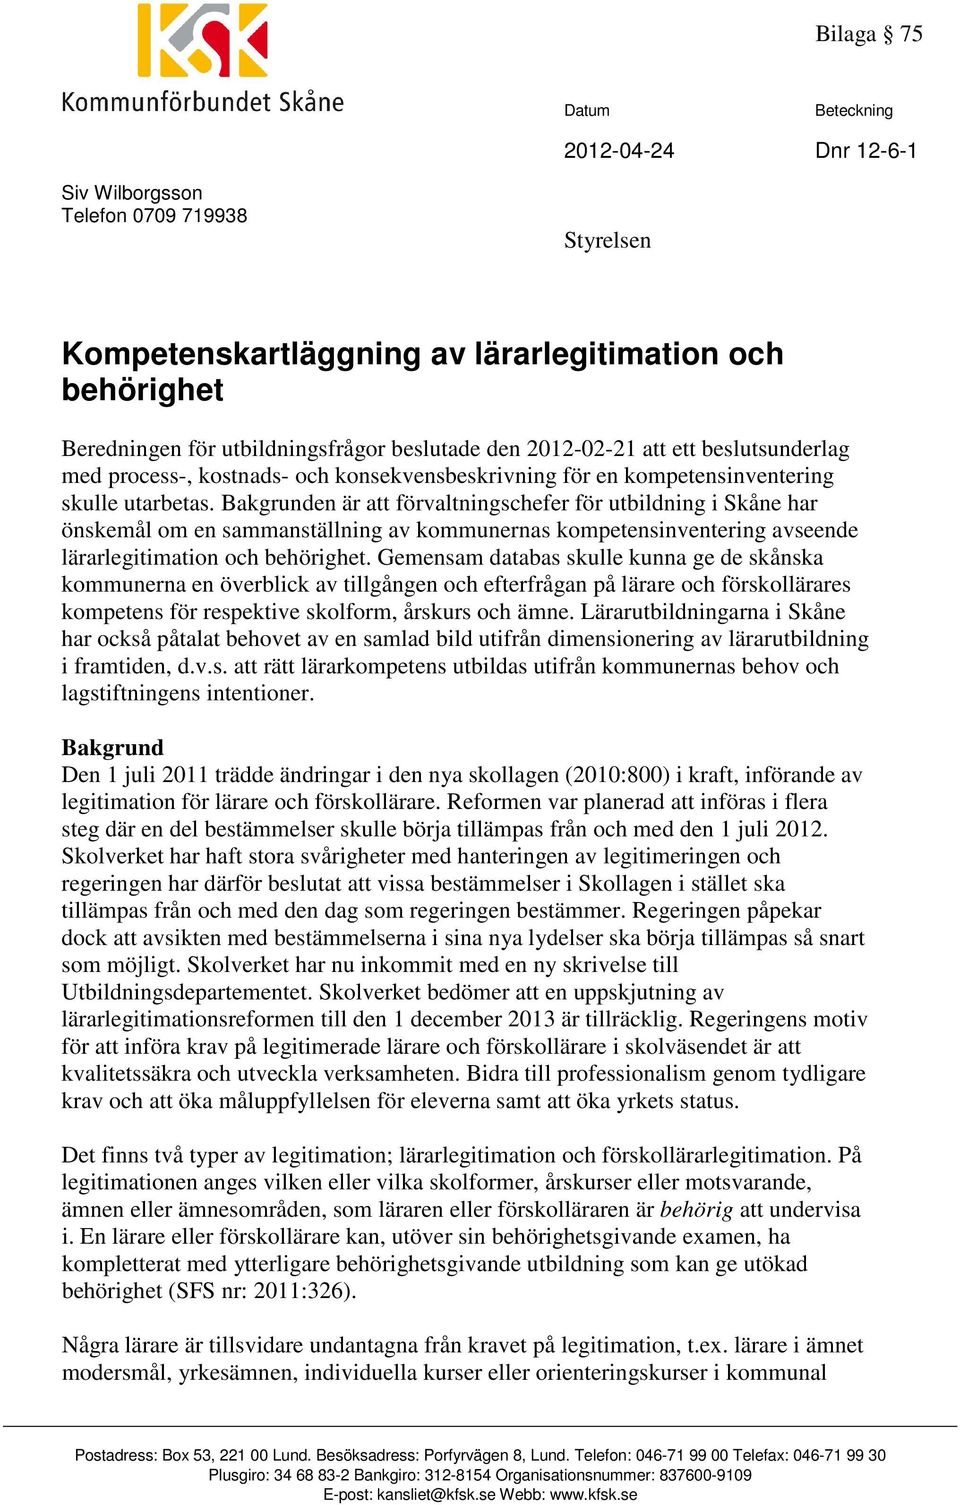 Bakgrunden är att förvaltningschefer för utbildning i Skåne har önskemål om en sammanställning av kommunernas kompetensinventering avseende lärarlegitimation och behörighet.